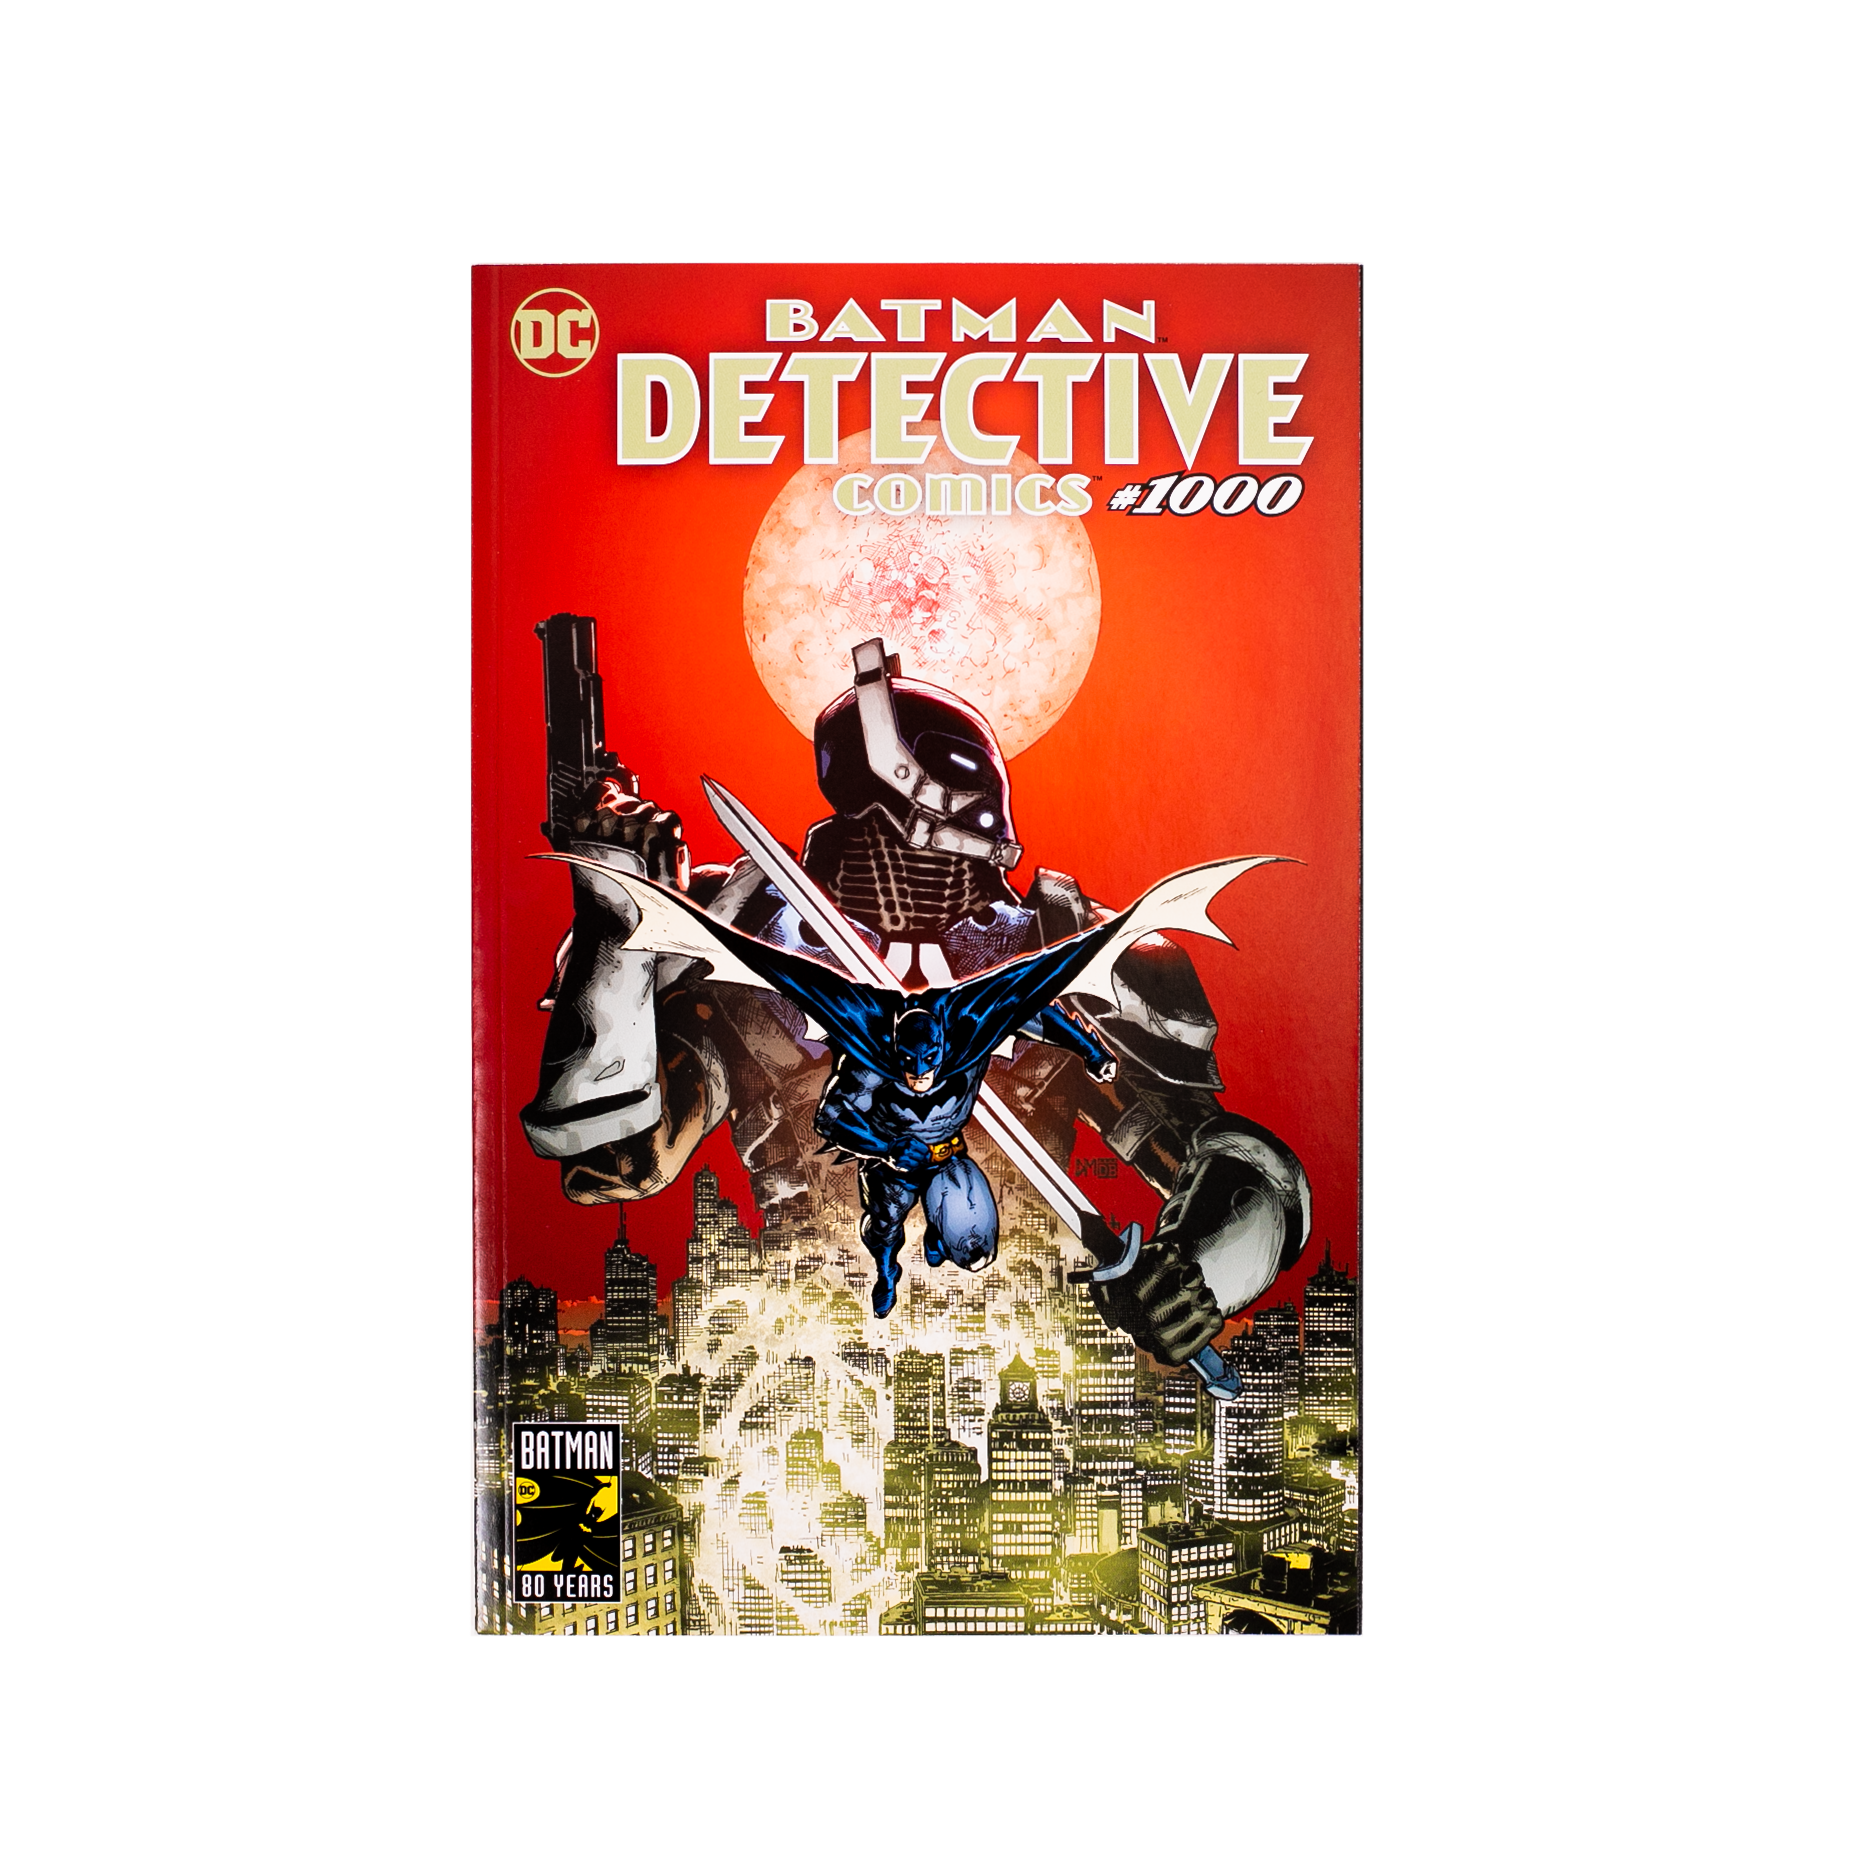 Planet Comicon | Batman Detective Comic Book